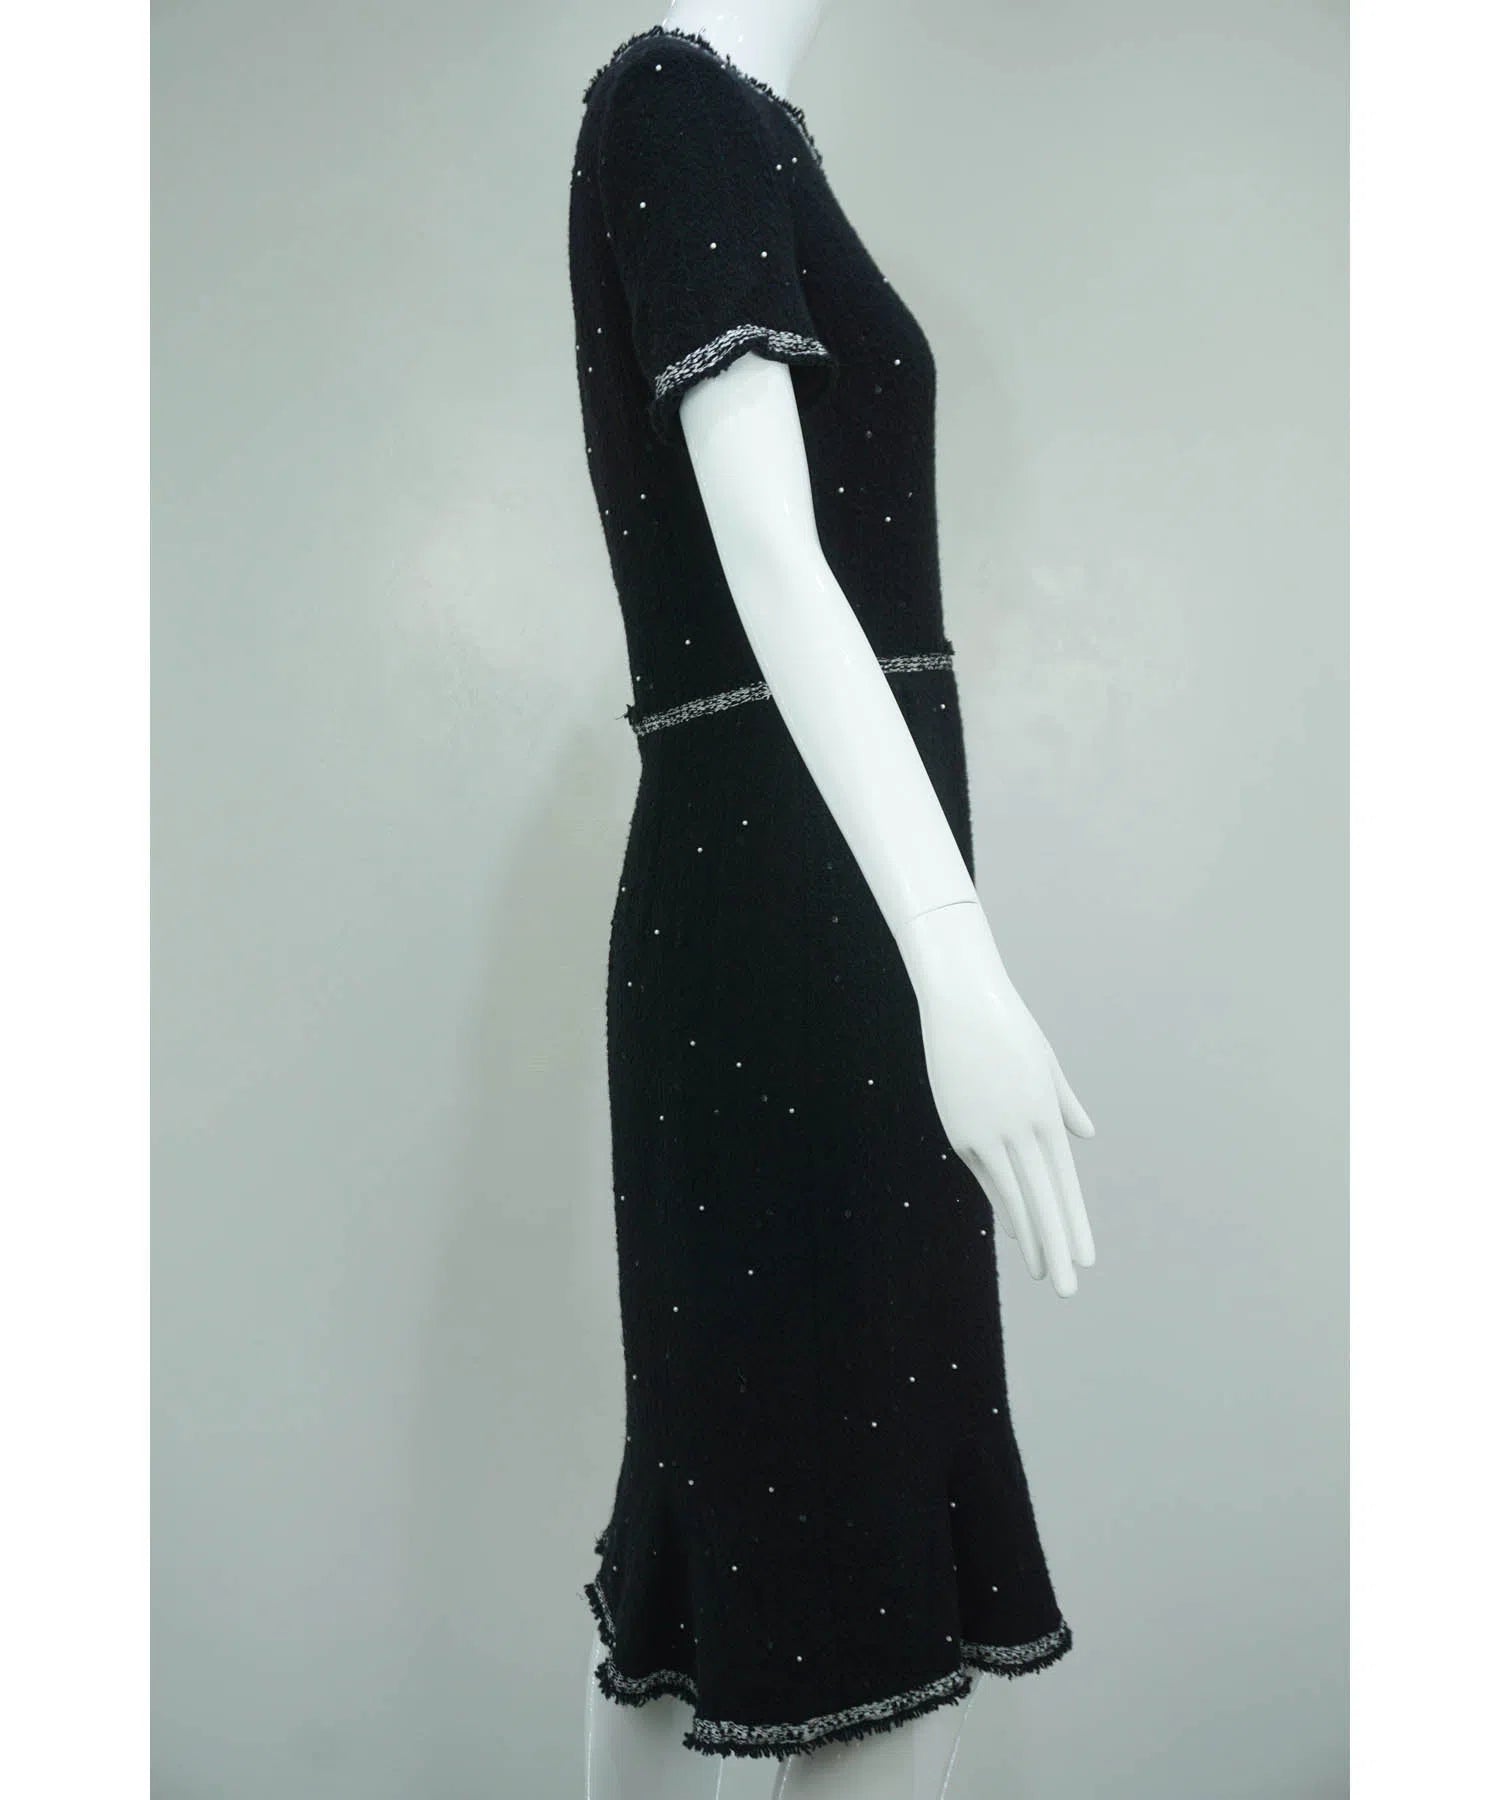 Oscar de la Renta Black Pearl and Sequins Embellished Cocktail Dress Sz 6